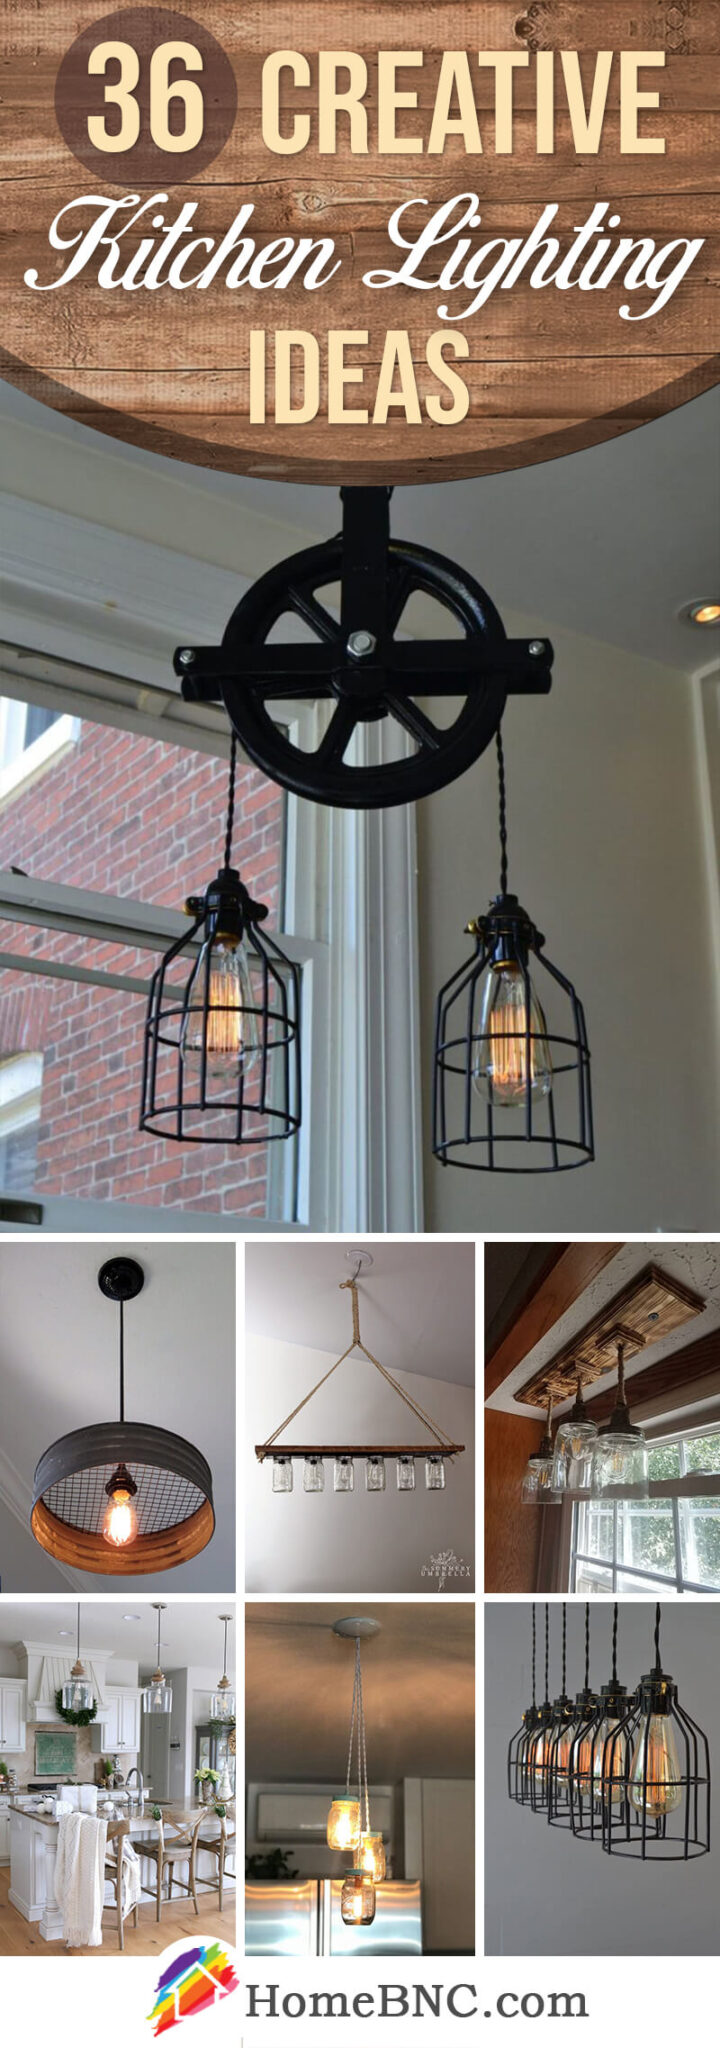 Kitchen Lighting Ideas Pinterest Share Homebnc V4 720x2048 